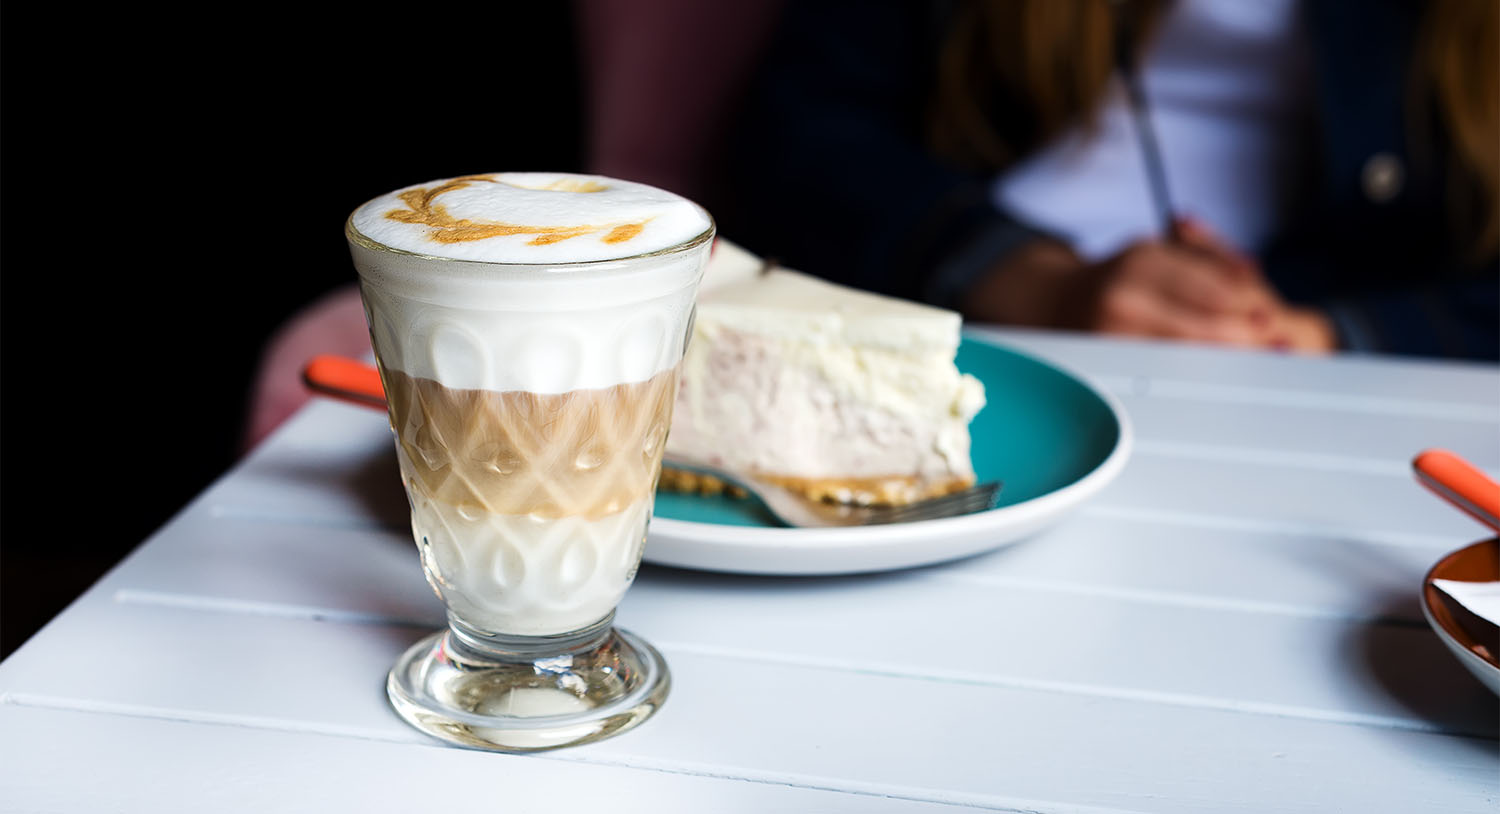 kawa-caffe-latte-macchiato-kawa-z-mlekiem-artystyczna-kawa-kawa-z-kawiarni-kawa-trzywarstwowa-trzy-warstwy